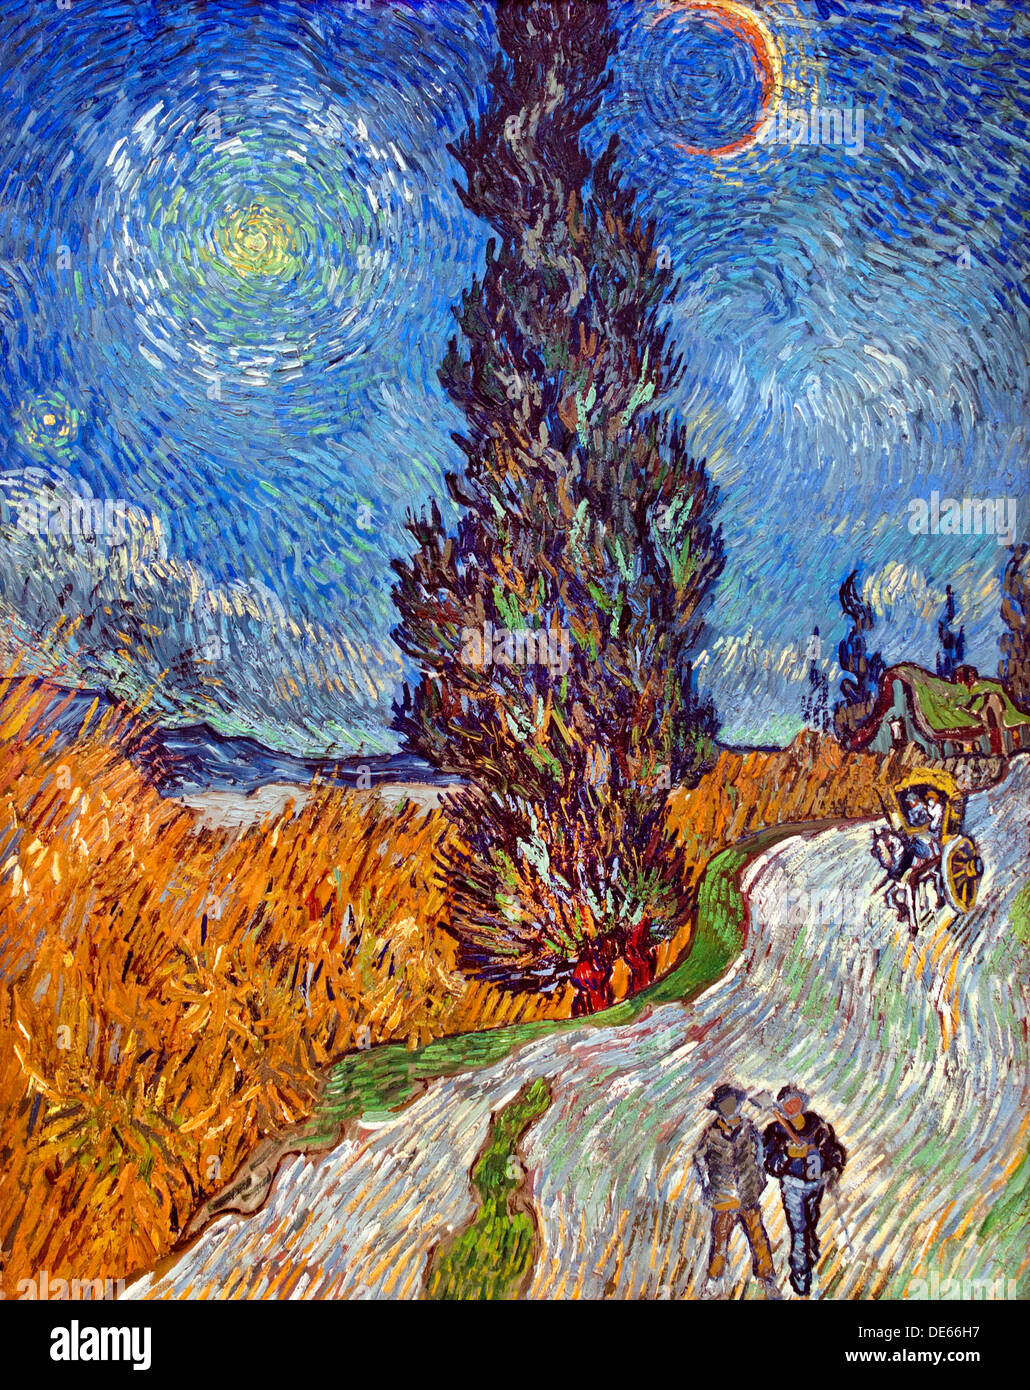 Route de campagne et la Provence par nuit Saint Remy 1889 Vincent van Gogh 1853 - 1890 Pays-Bas Néerlandais Banque D'Images